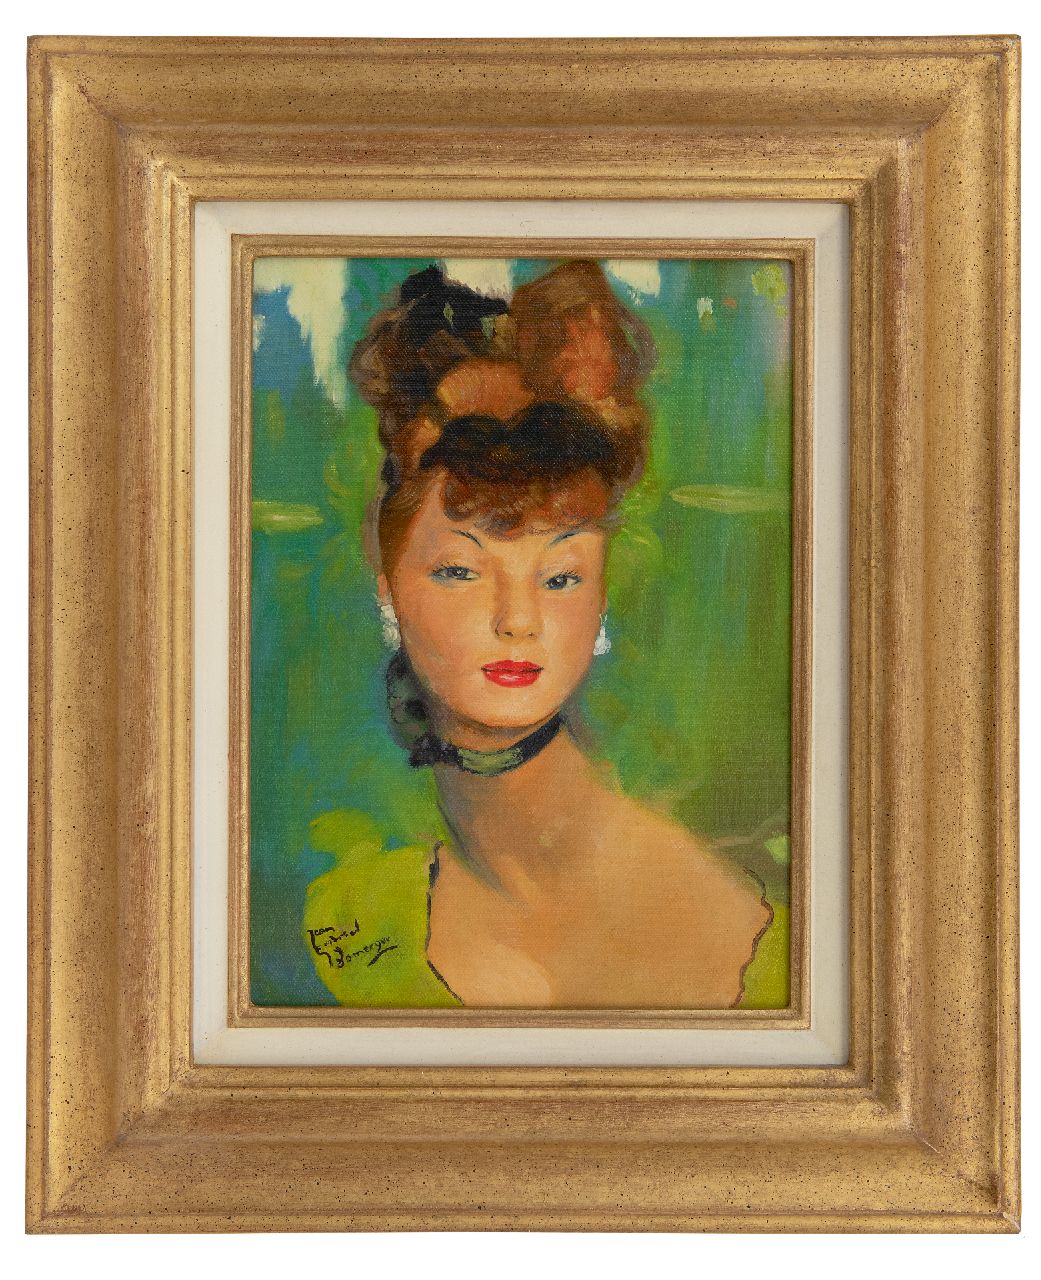 Domergue J.G.  | Jean-Gabriel Domergue | Schilderijen te koop aangeboden | Jonge vrouw gekleed in groen, olieverf op doek 33,5 x 24,0 cm, gesigneerd linksonder